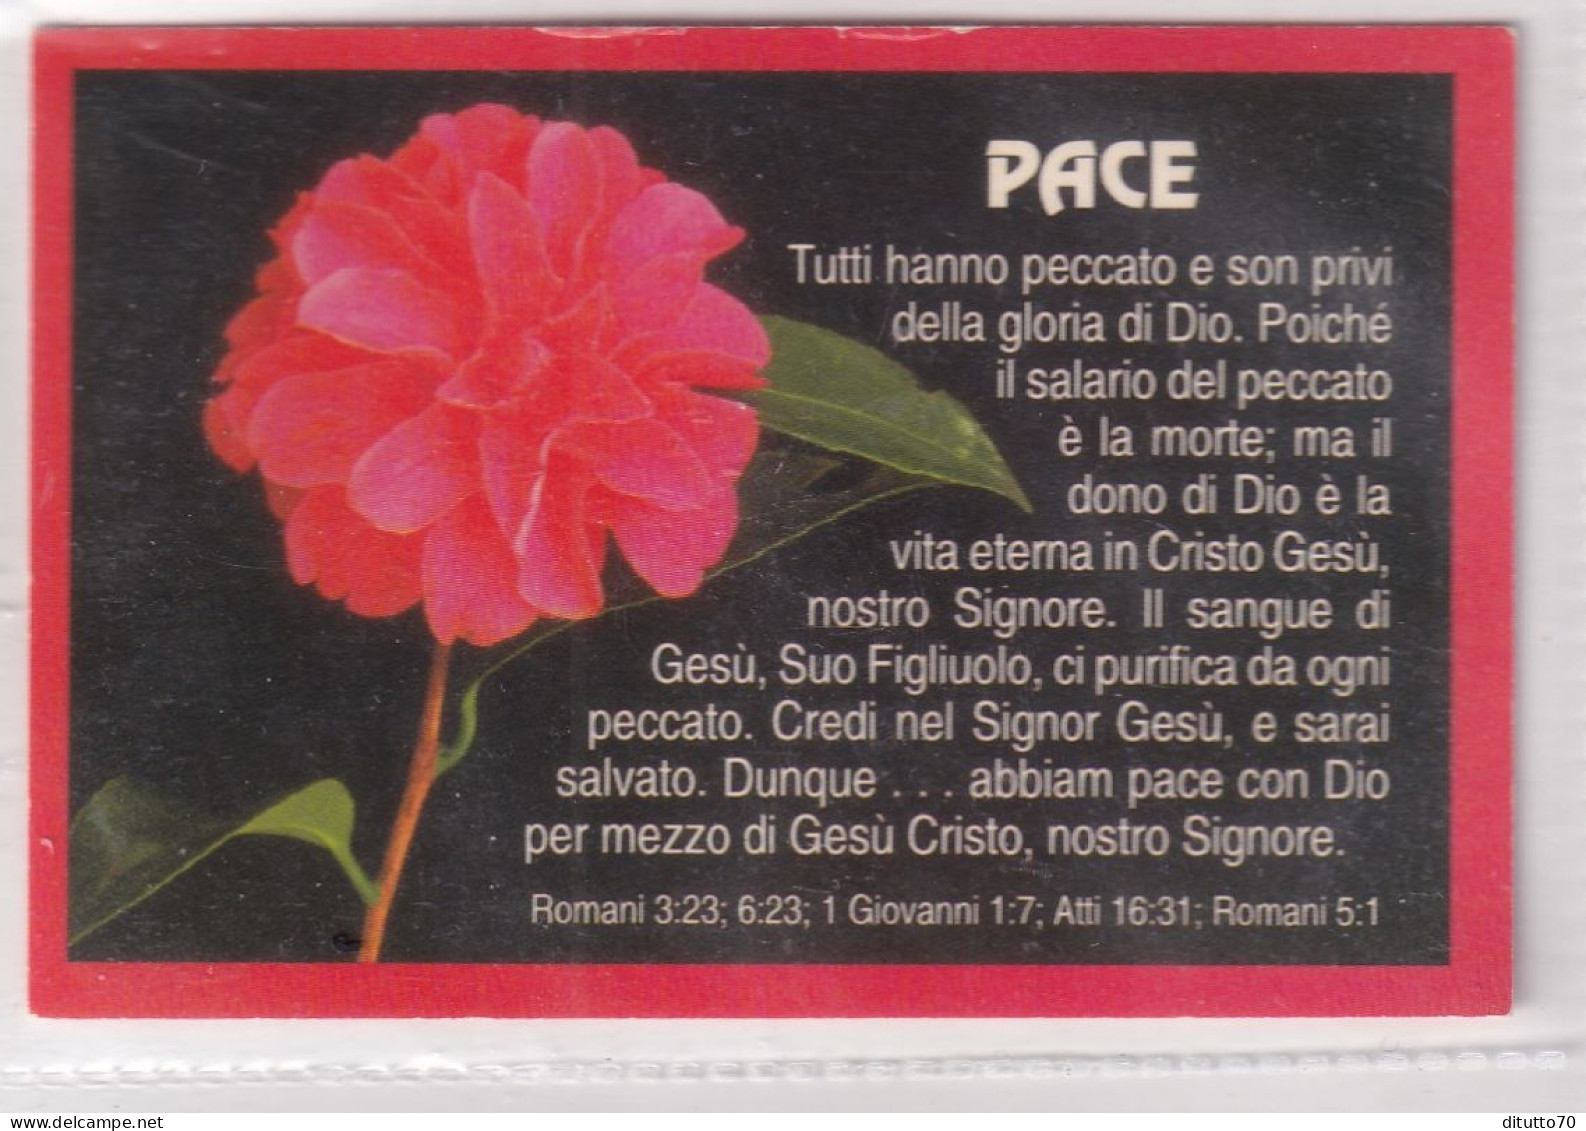 Calendarietto - Pace - Roma - Anno 1997 - Kleinformat : 1991-00